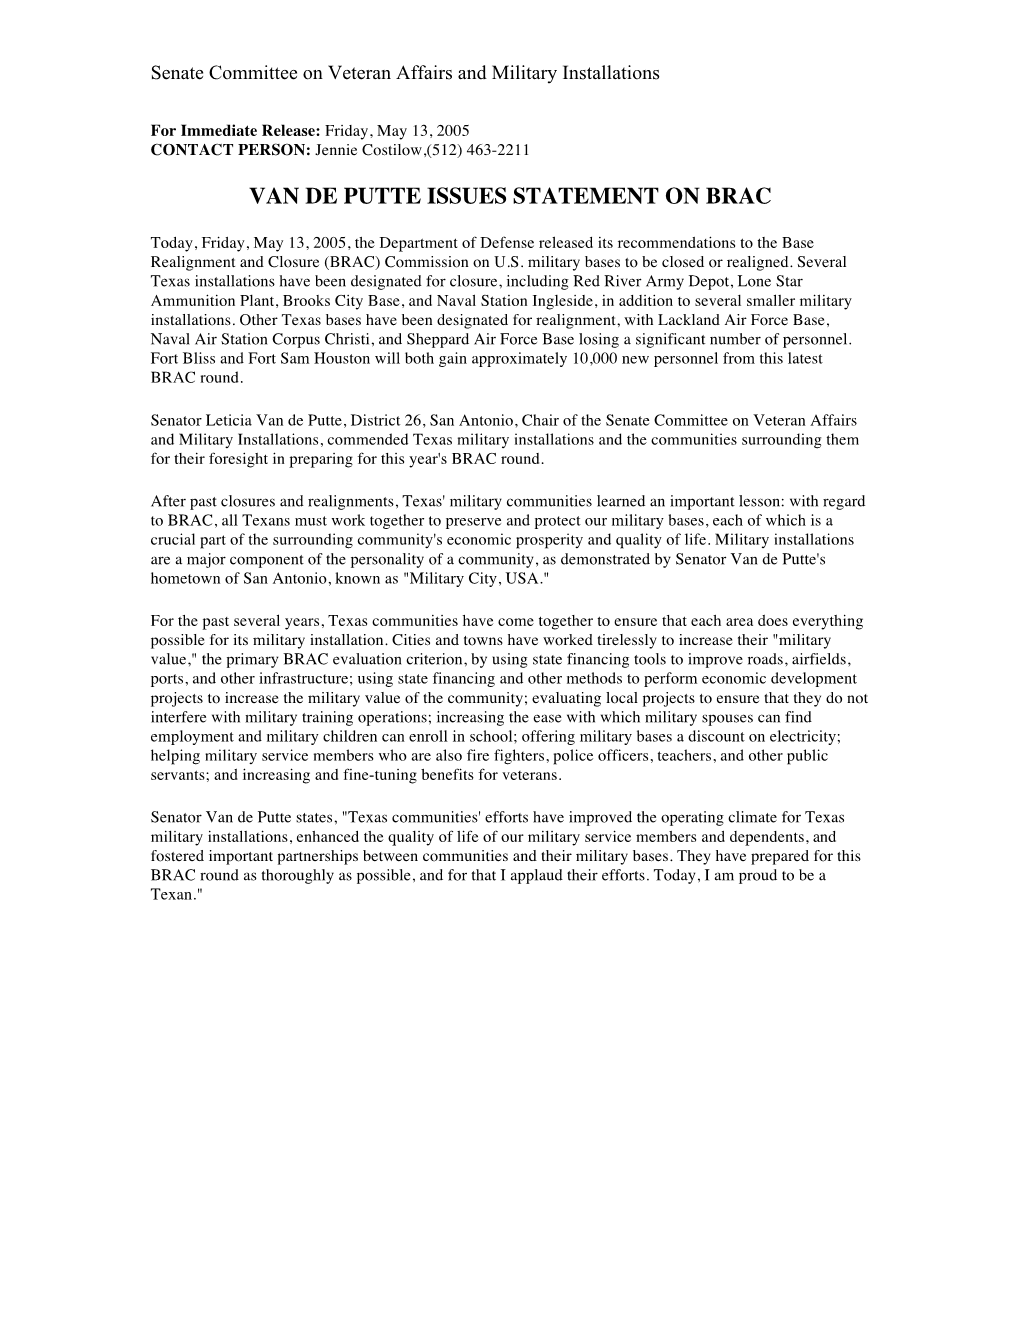 Van De Putte Issues Statement on Brac